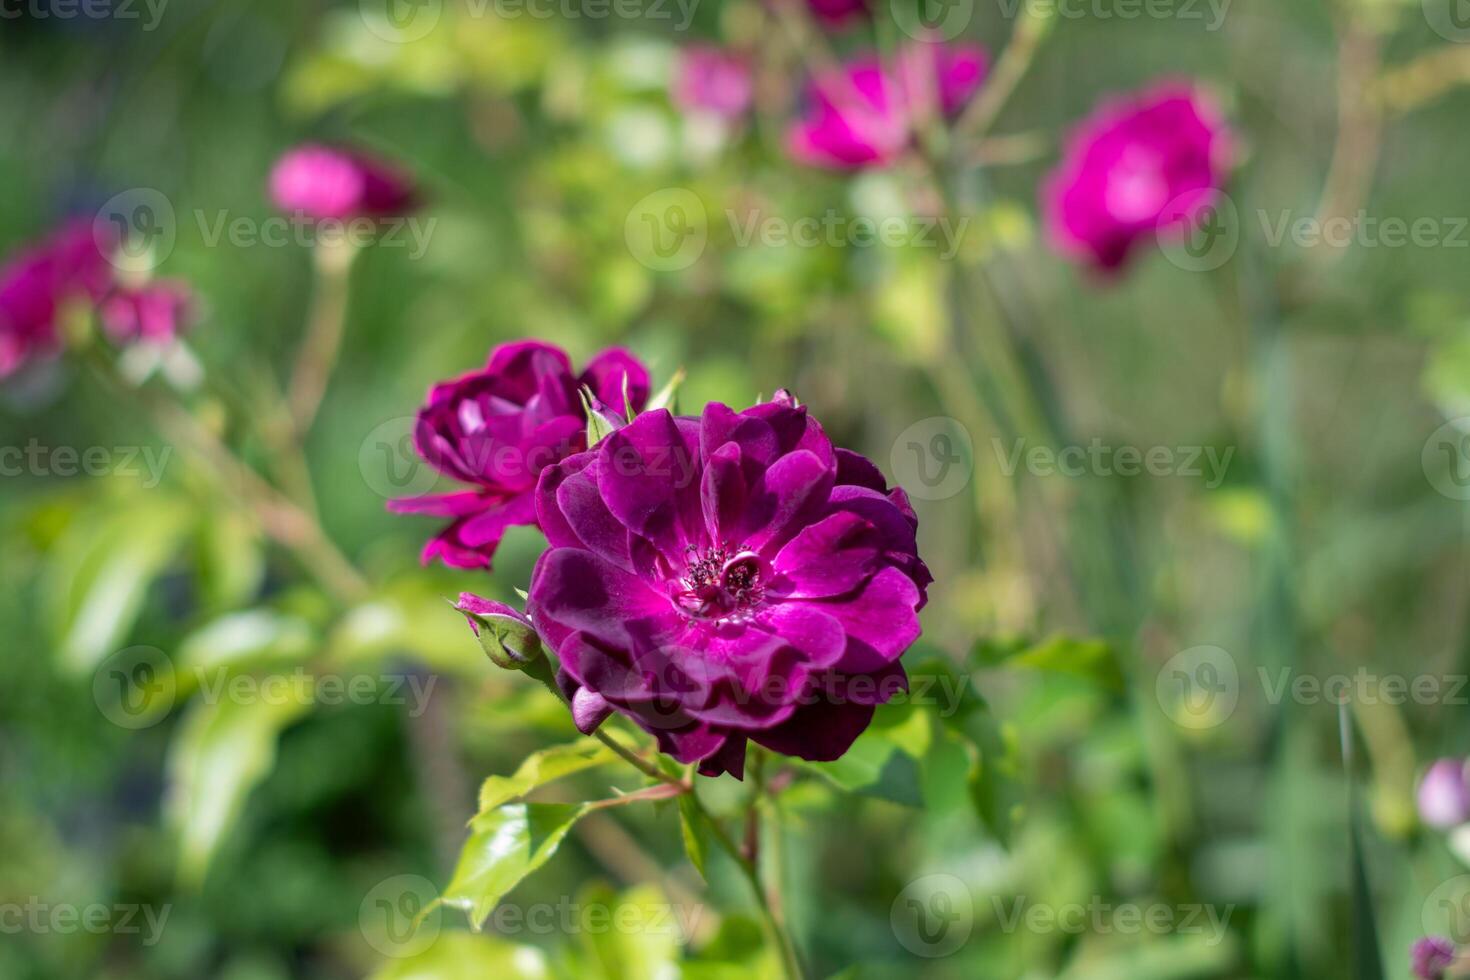 violet violet mixte Couleur floribunda Rose Bourgogne la glace fleurs dans le jardin, contre flou vert feuilles photo